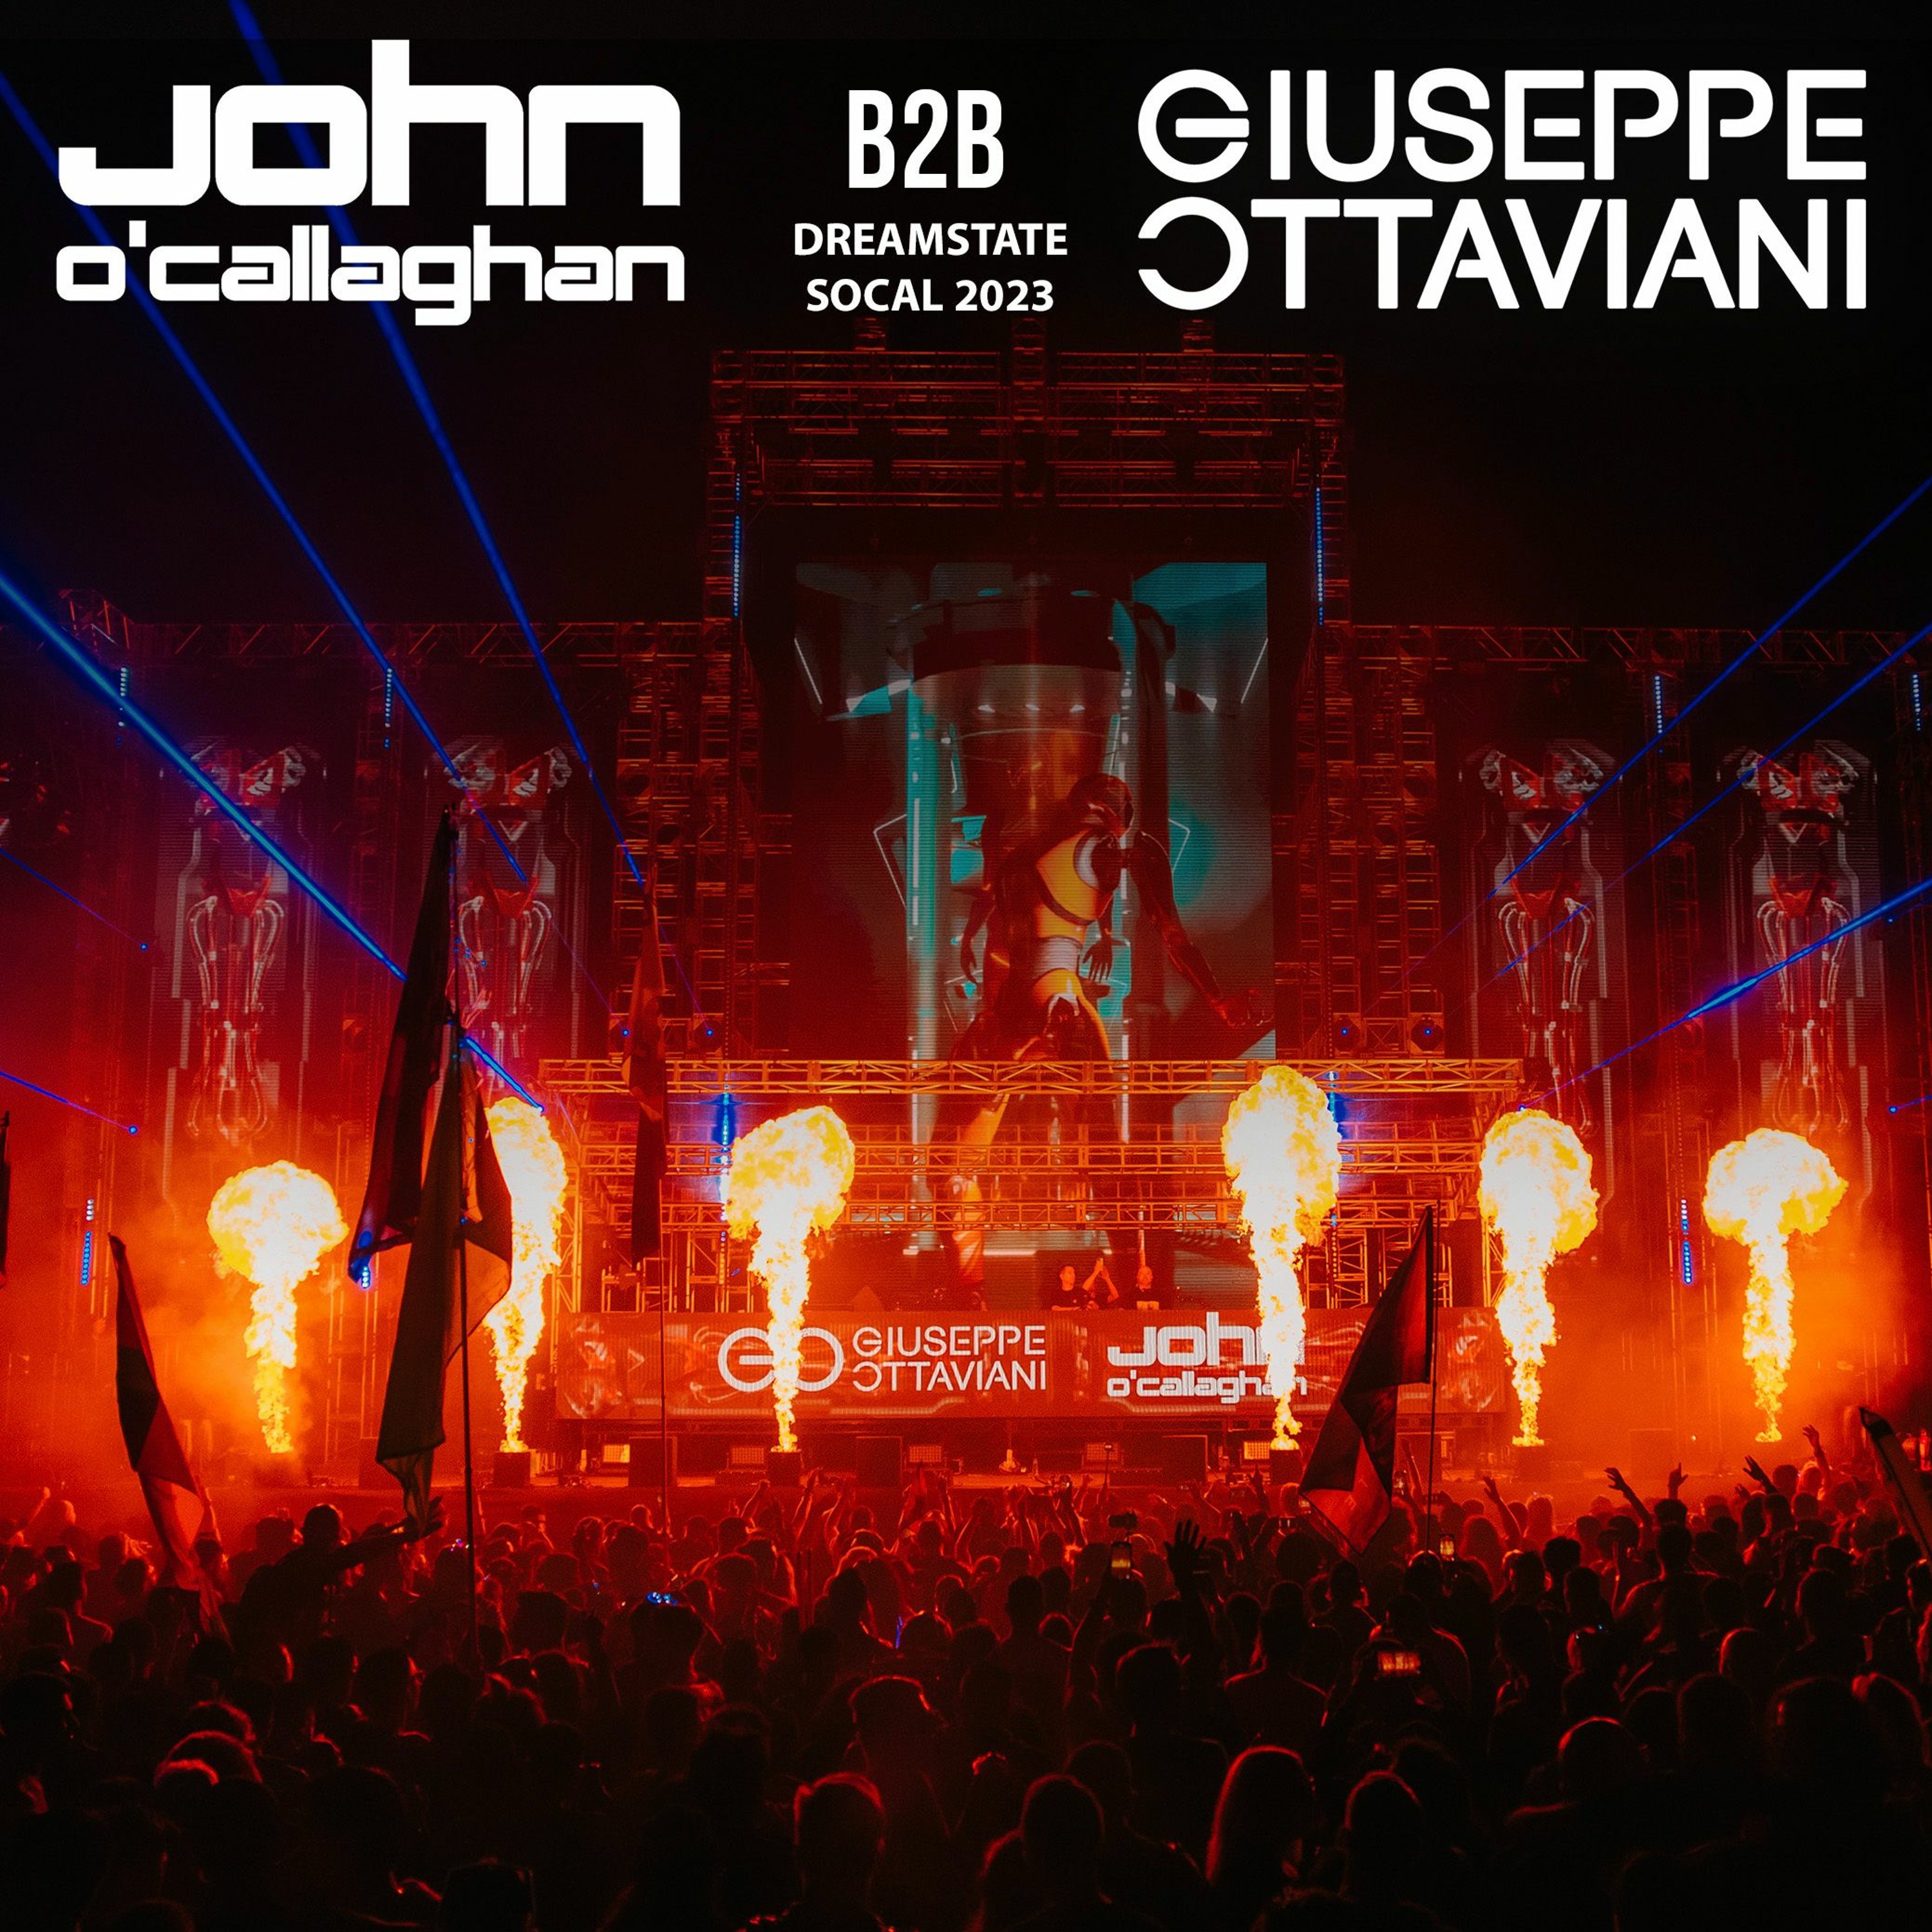 John O'Callaghan b2b Giuseppe Ottaviani @ Dreamstate SoCal 2023